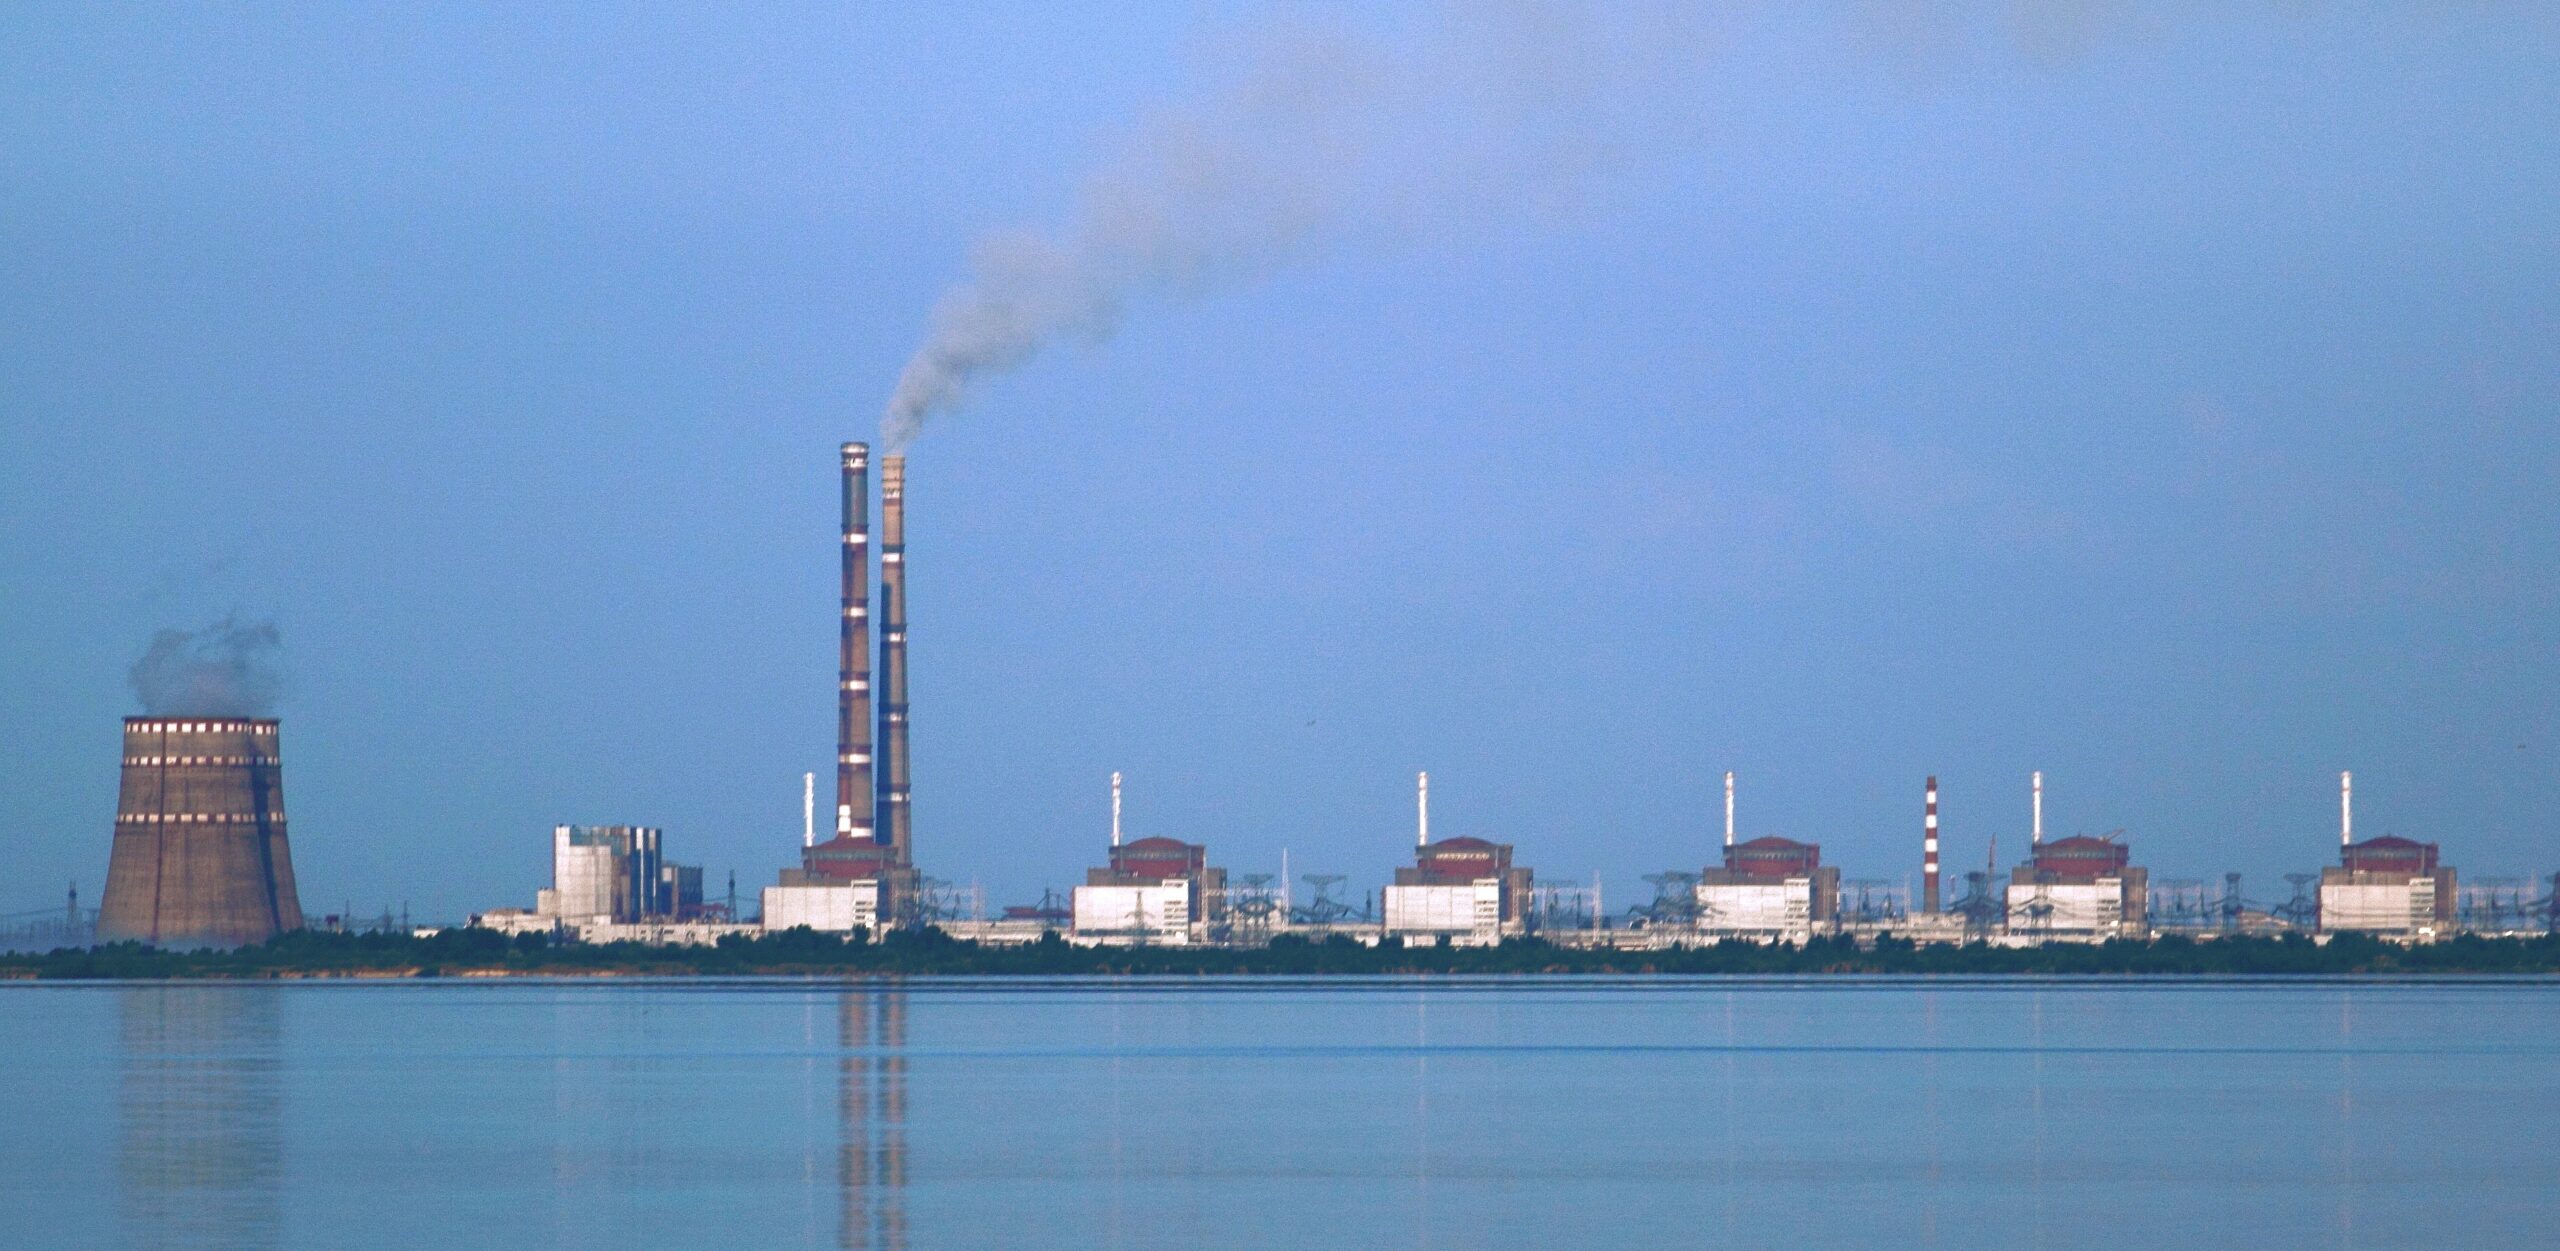 الوكالة الذرية: محطة زابوريجيا تتلقى المياه من احتياطي سد كاخوفكا